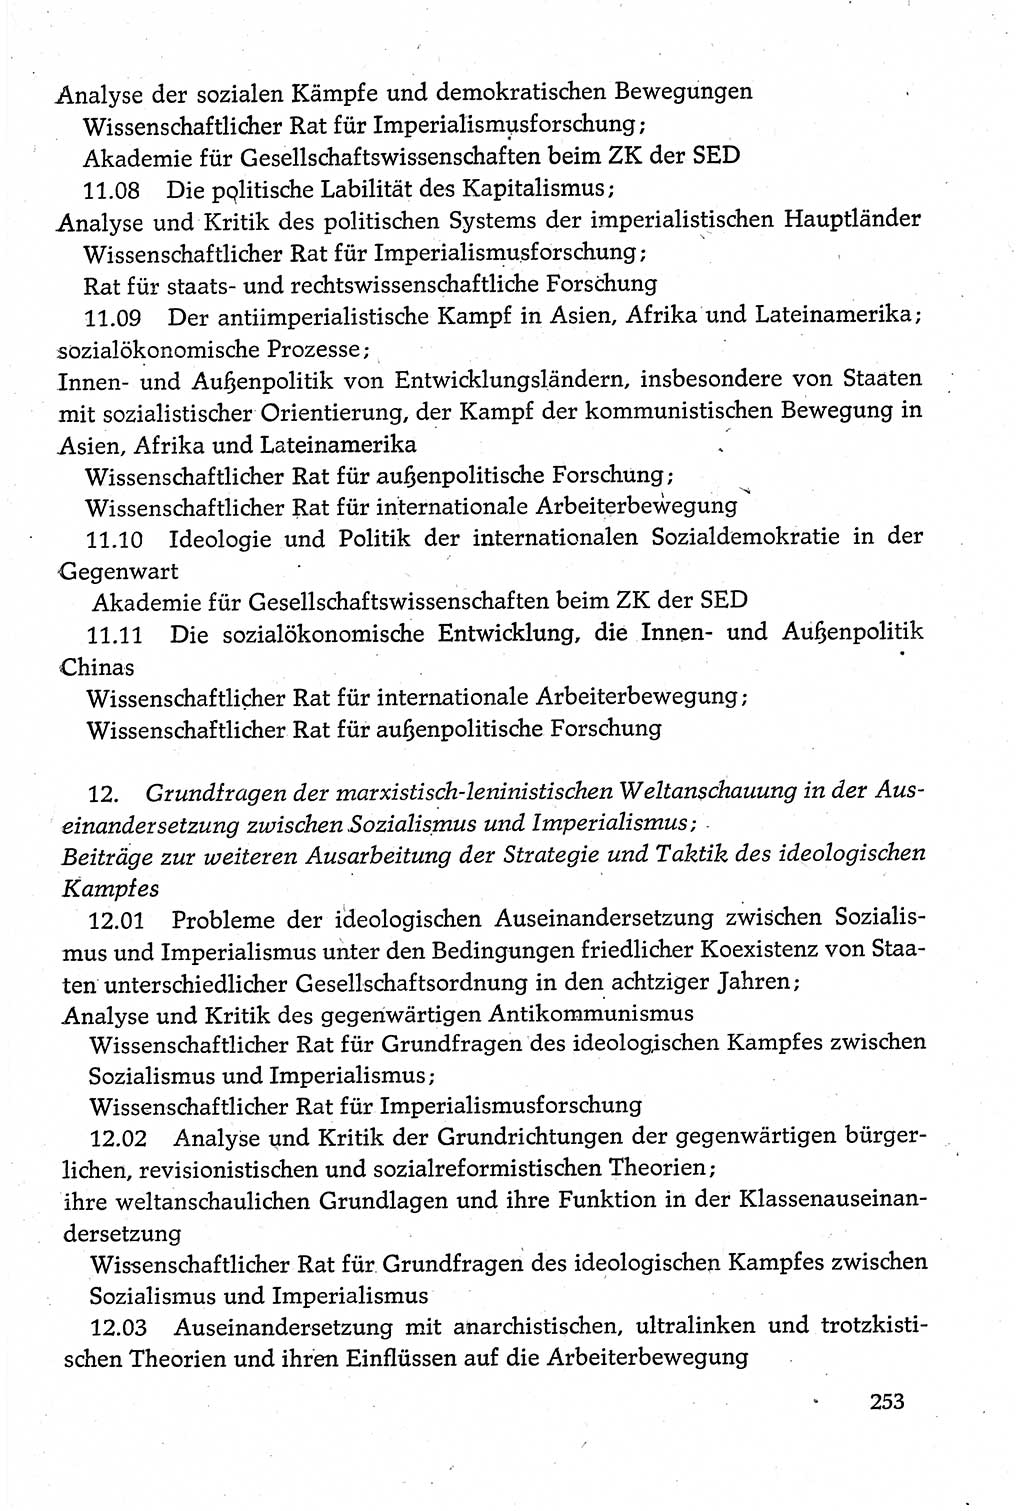 Dokumente der Sozialistischen Einheitspartei Deutschlands (SED) [Deutsche Demokratische Republik (DDR)] 1980-1981, Seite 253 (Dok. SED DDR 1980-1981, S. 253)